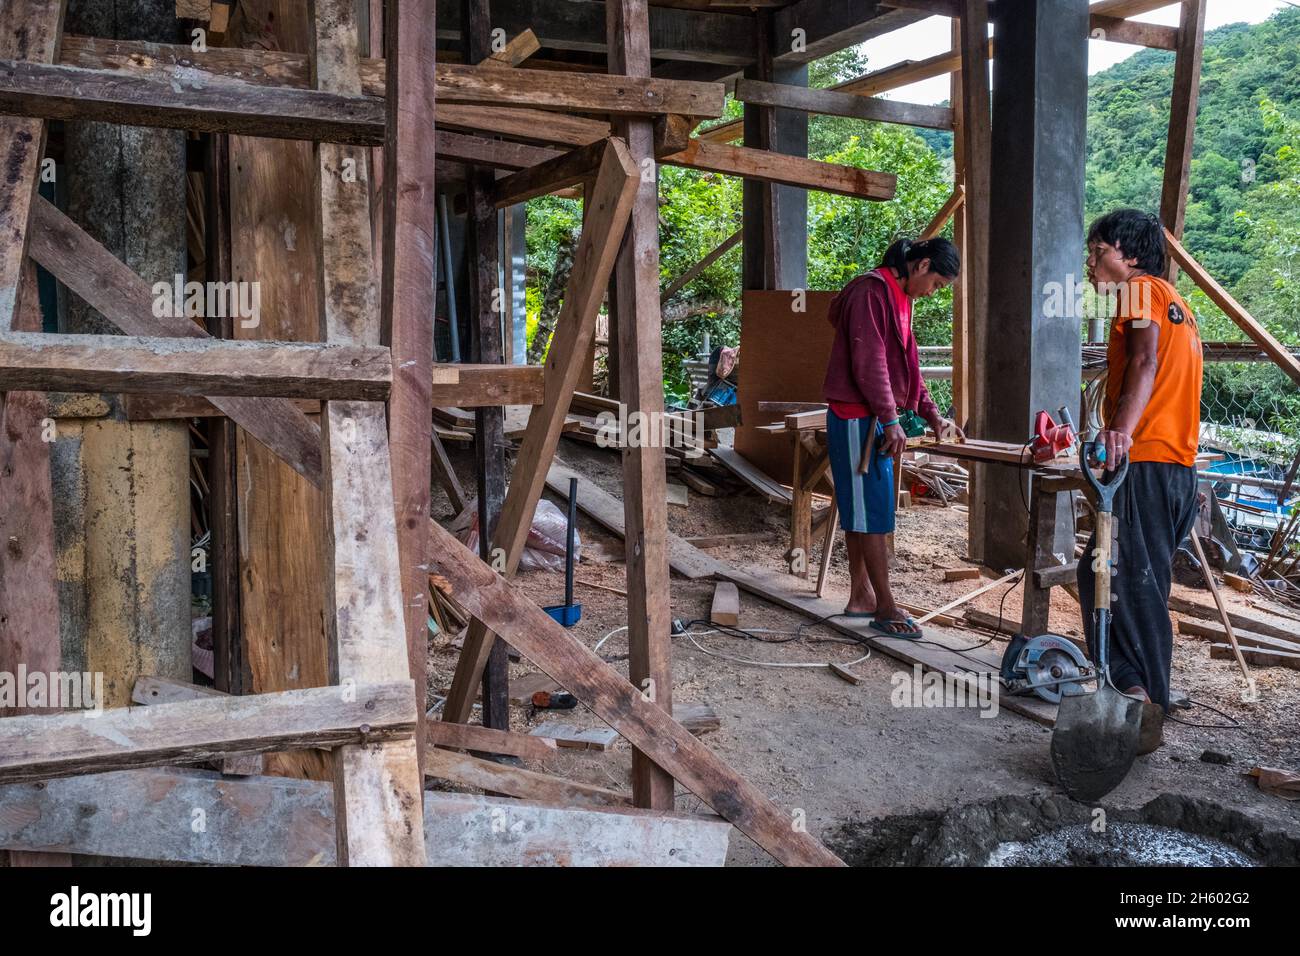 Juillet 2017.Les locaux sont autorisés à récolter du bois de la forêt pour une utilisation de subsistance comme la construction de maisons.Malico, Nueva Vizcaya, Philippines. Banque D'Images